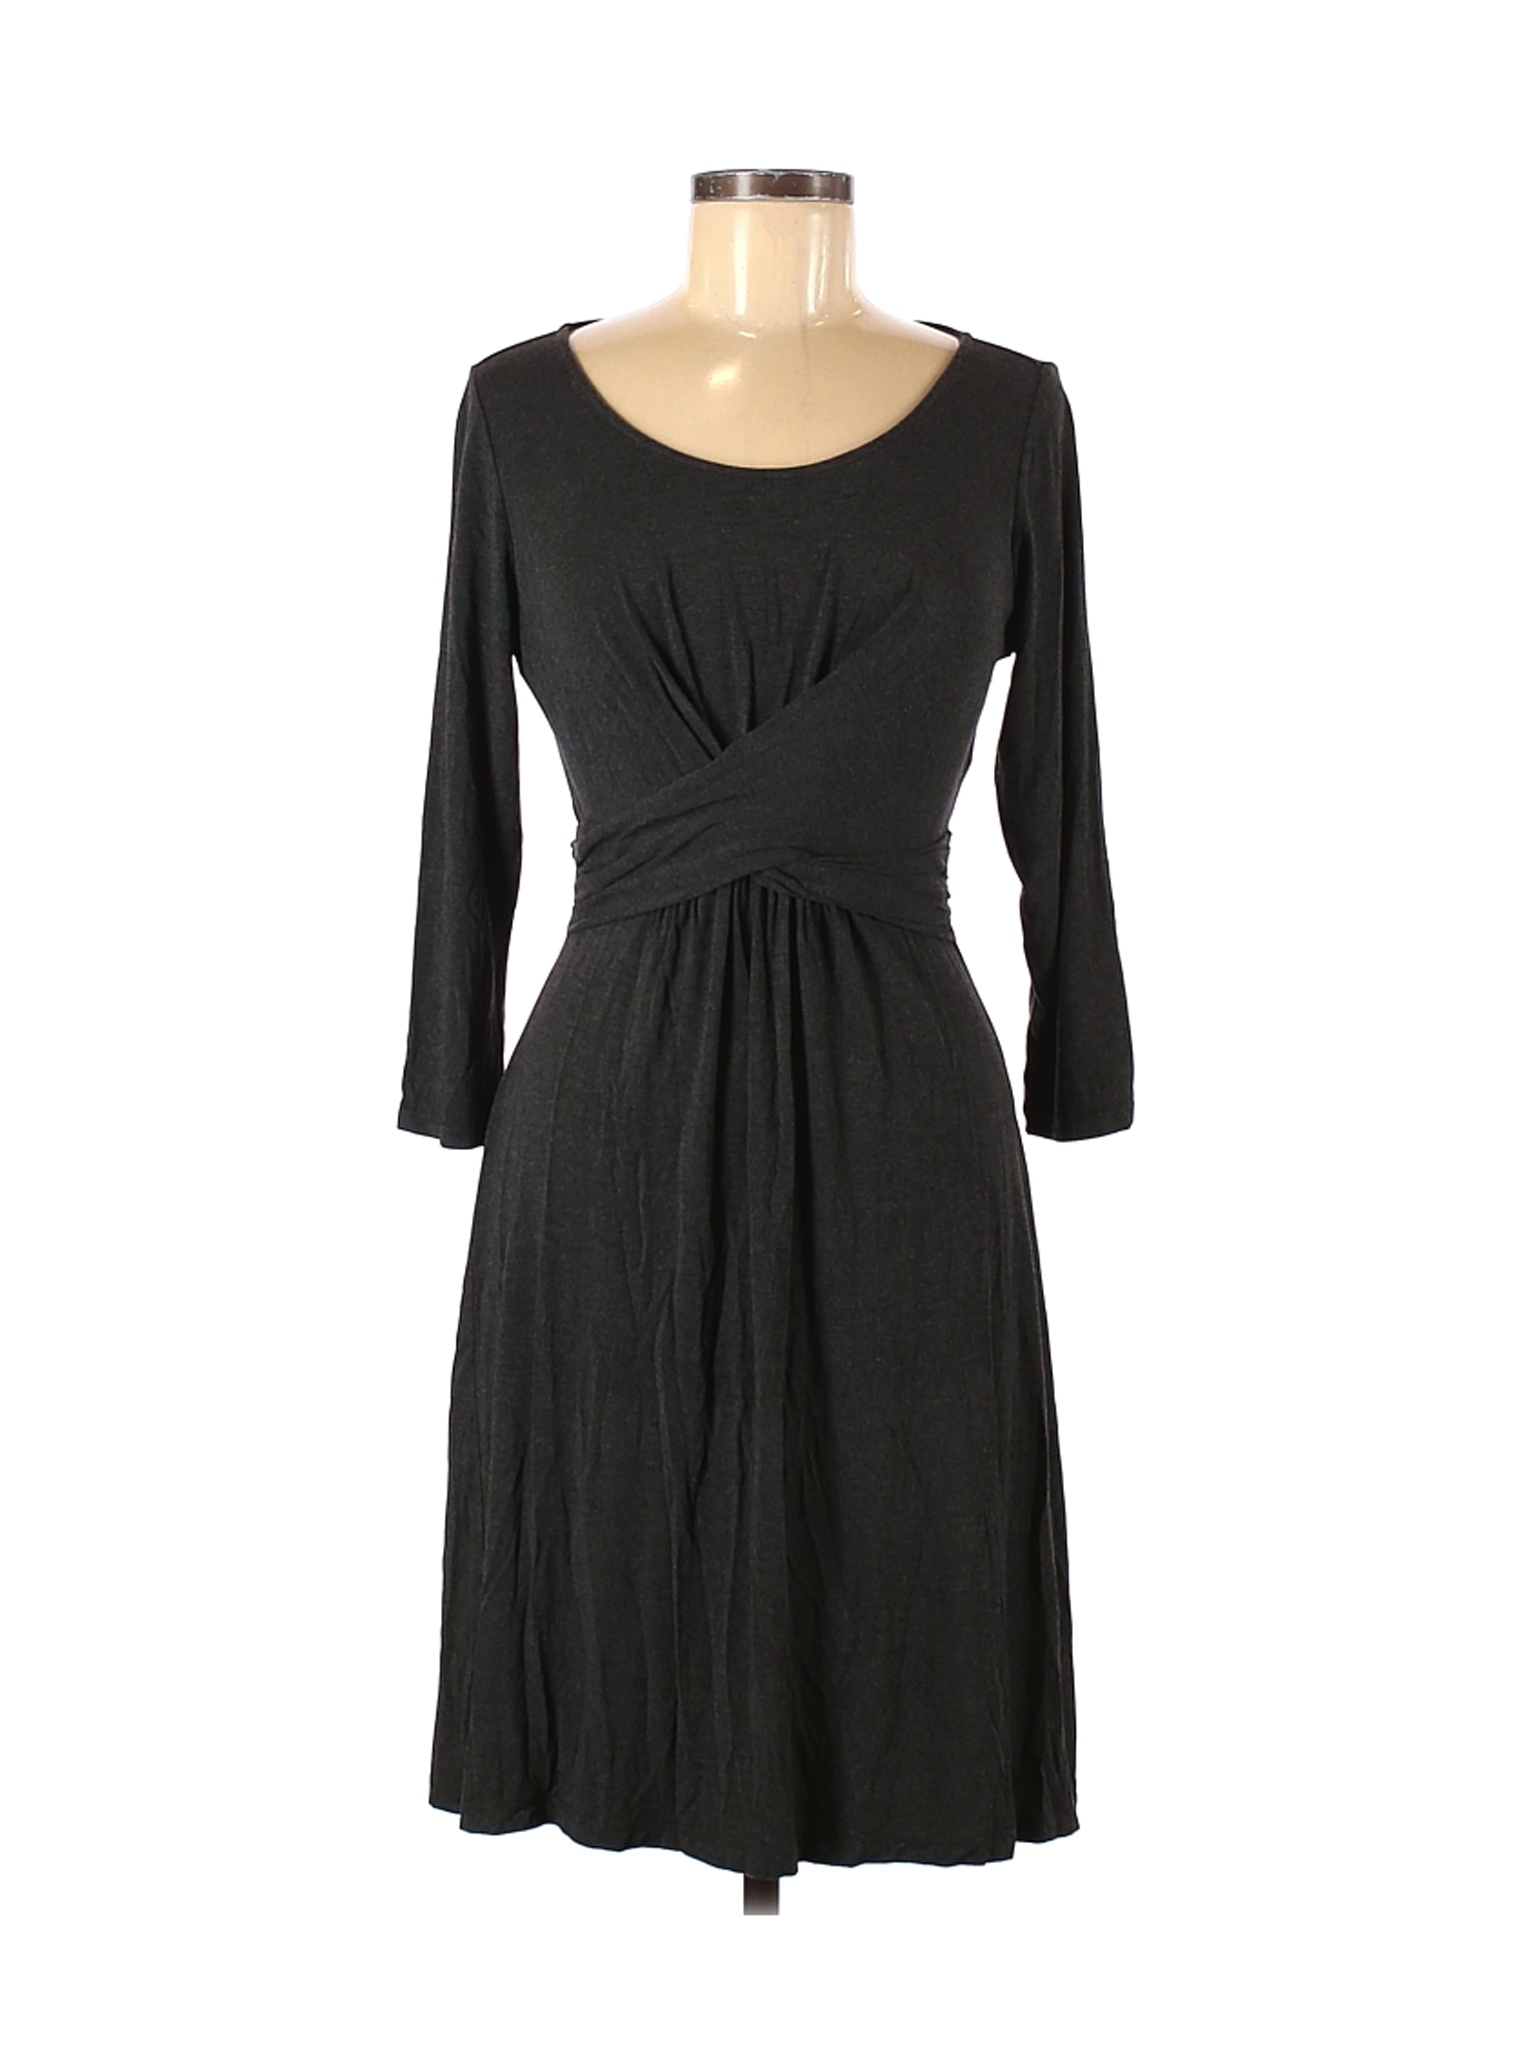 Boden Women Black Casual Dress 8 | eBay